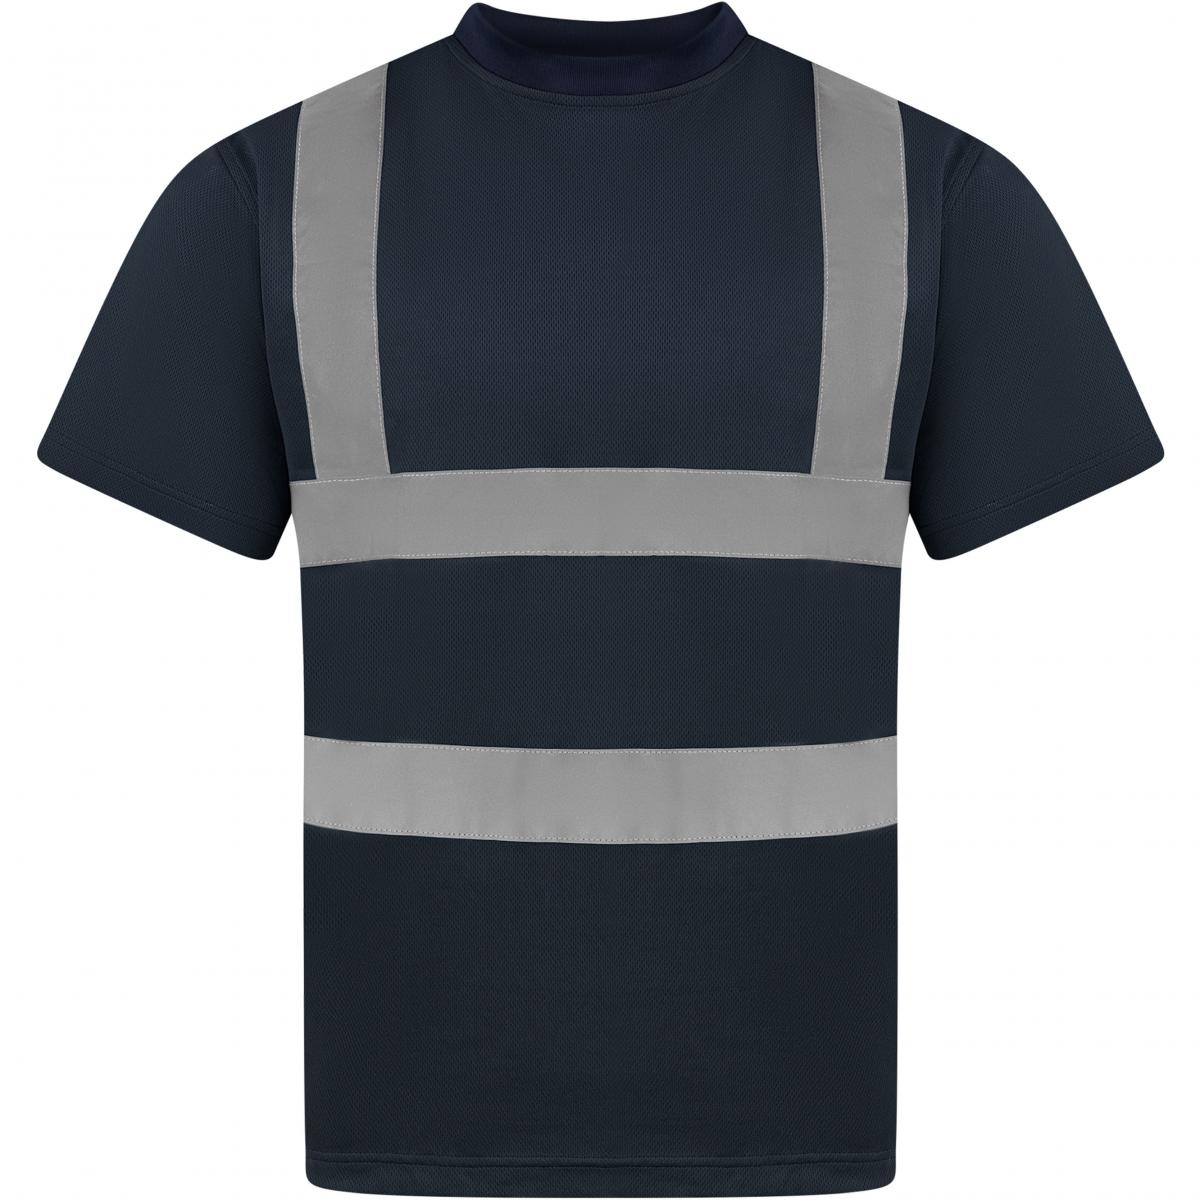 Hersteller: Korntex Herstellernummer: KXS Artikelbezeichnung: Herren Hi-Viz Workwear Arbeits T-Shirt EN ISO 20471 Farbe: Navy